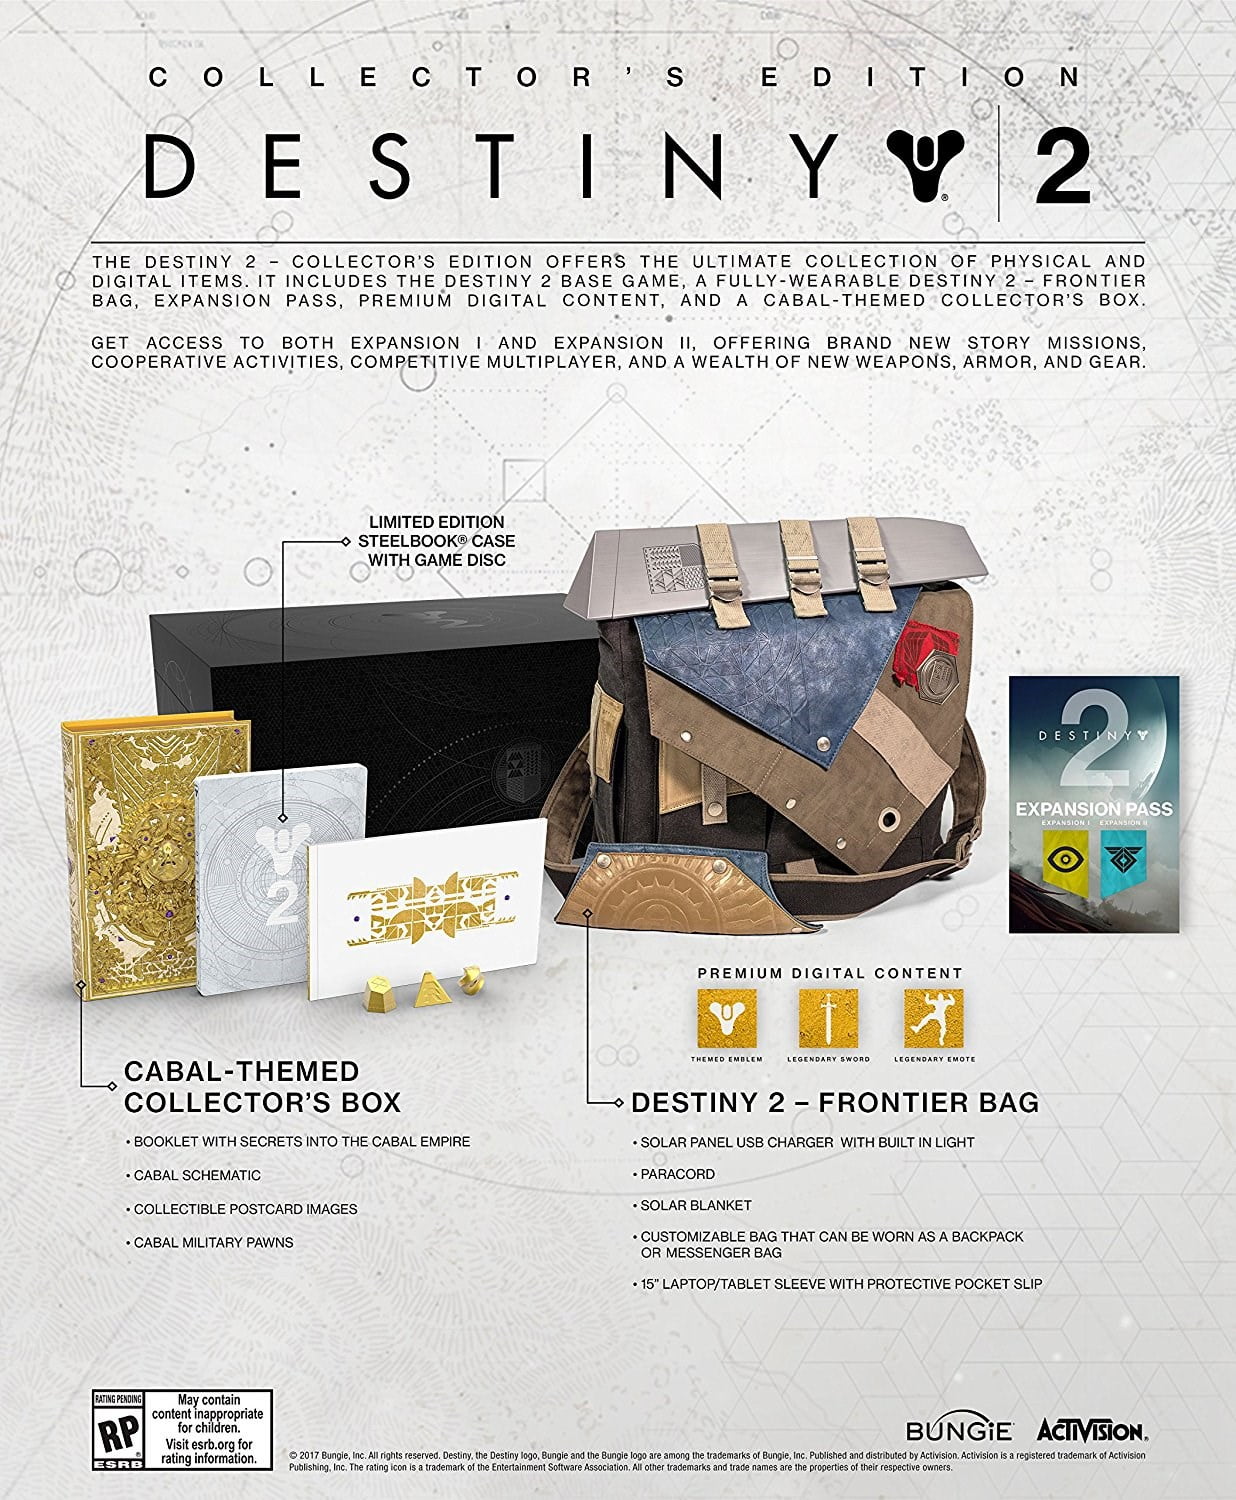 Bungie diz que muitos jogadores de Destiny 2 no PS5 ainda estão usando a  versão do